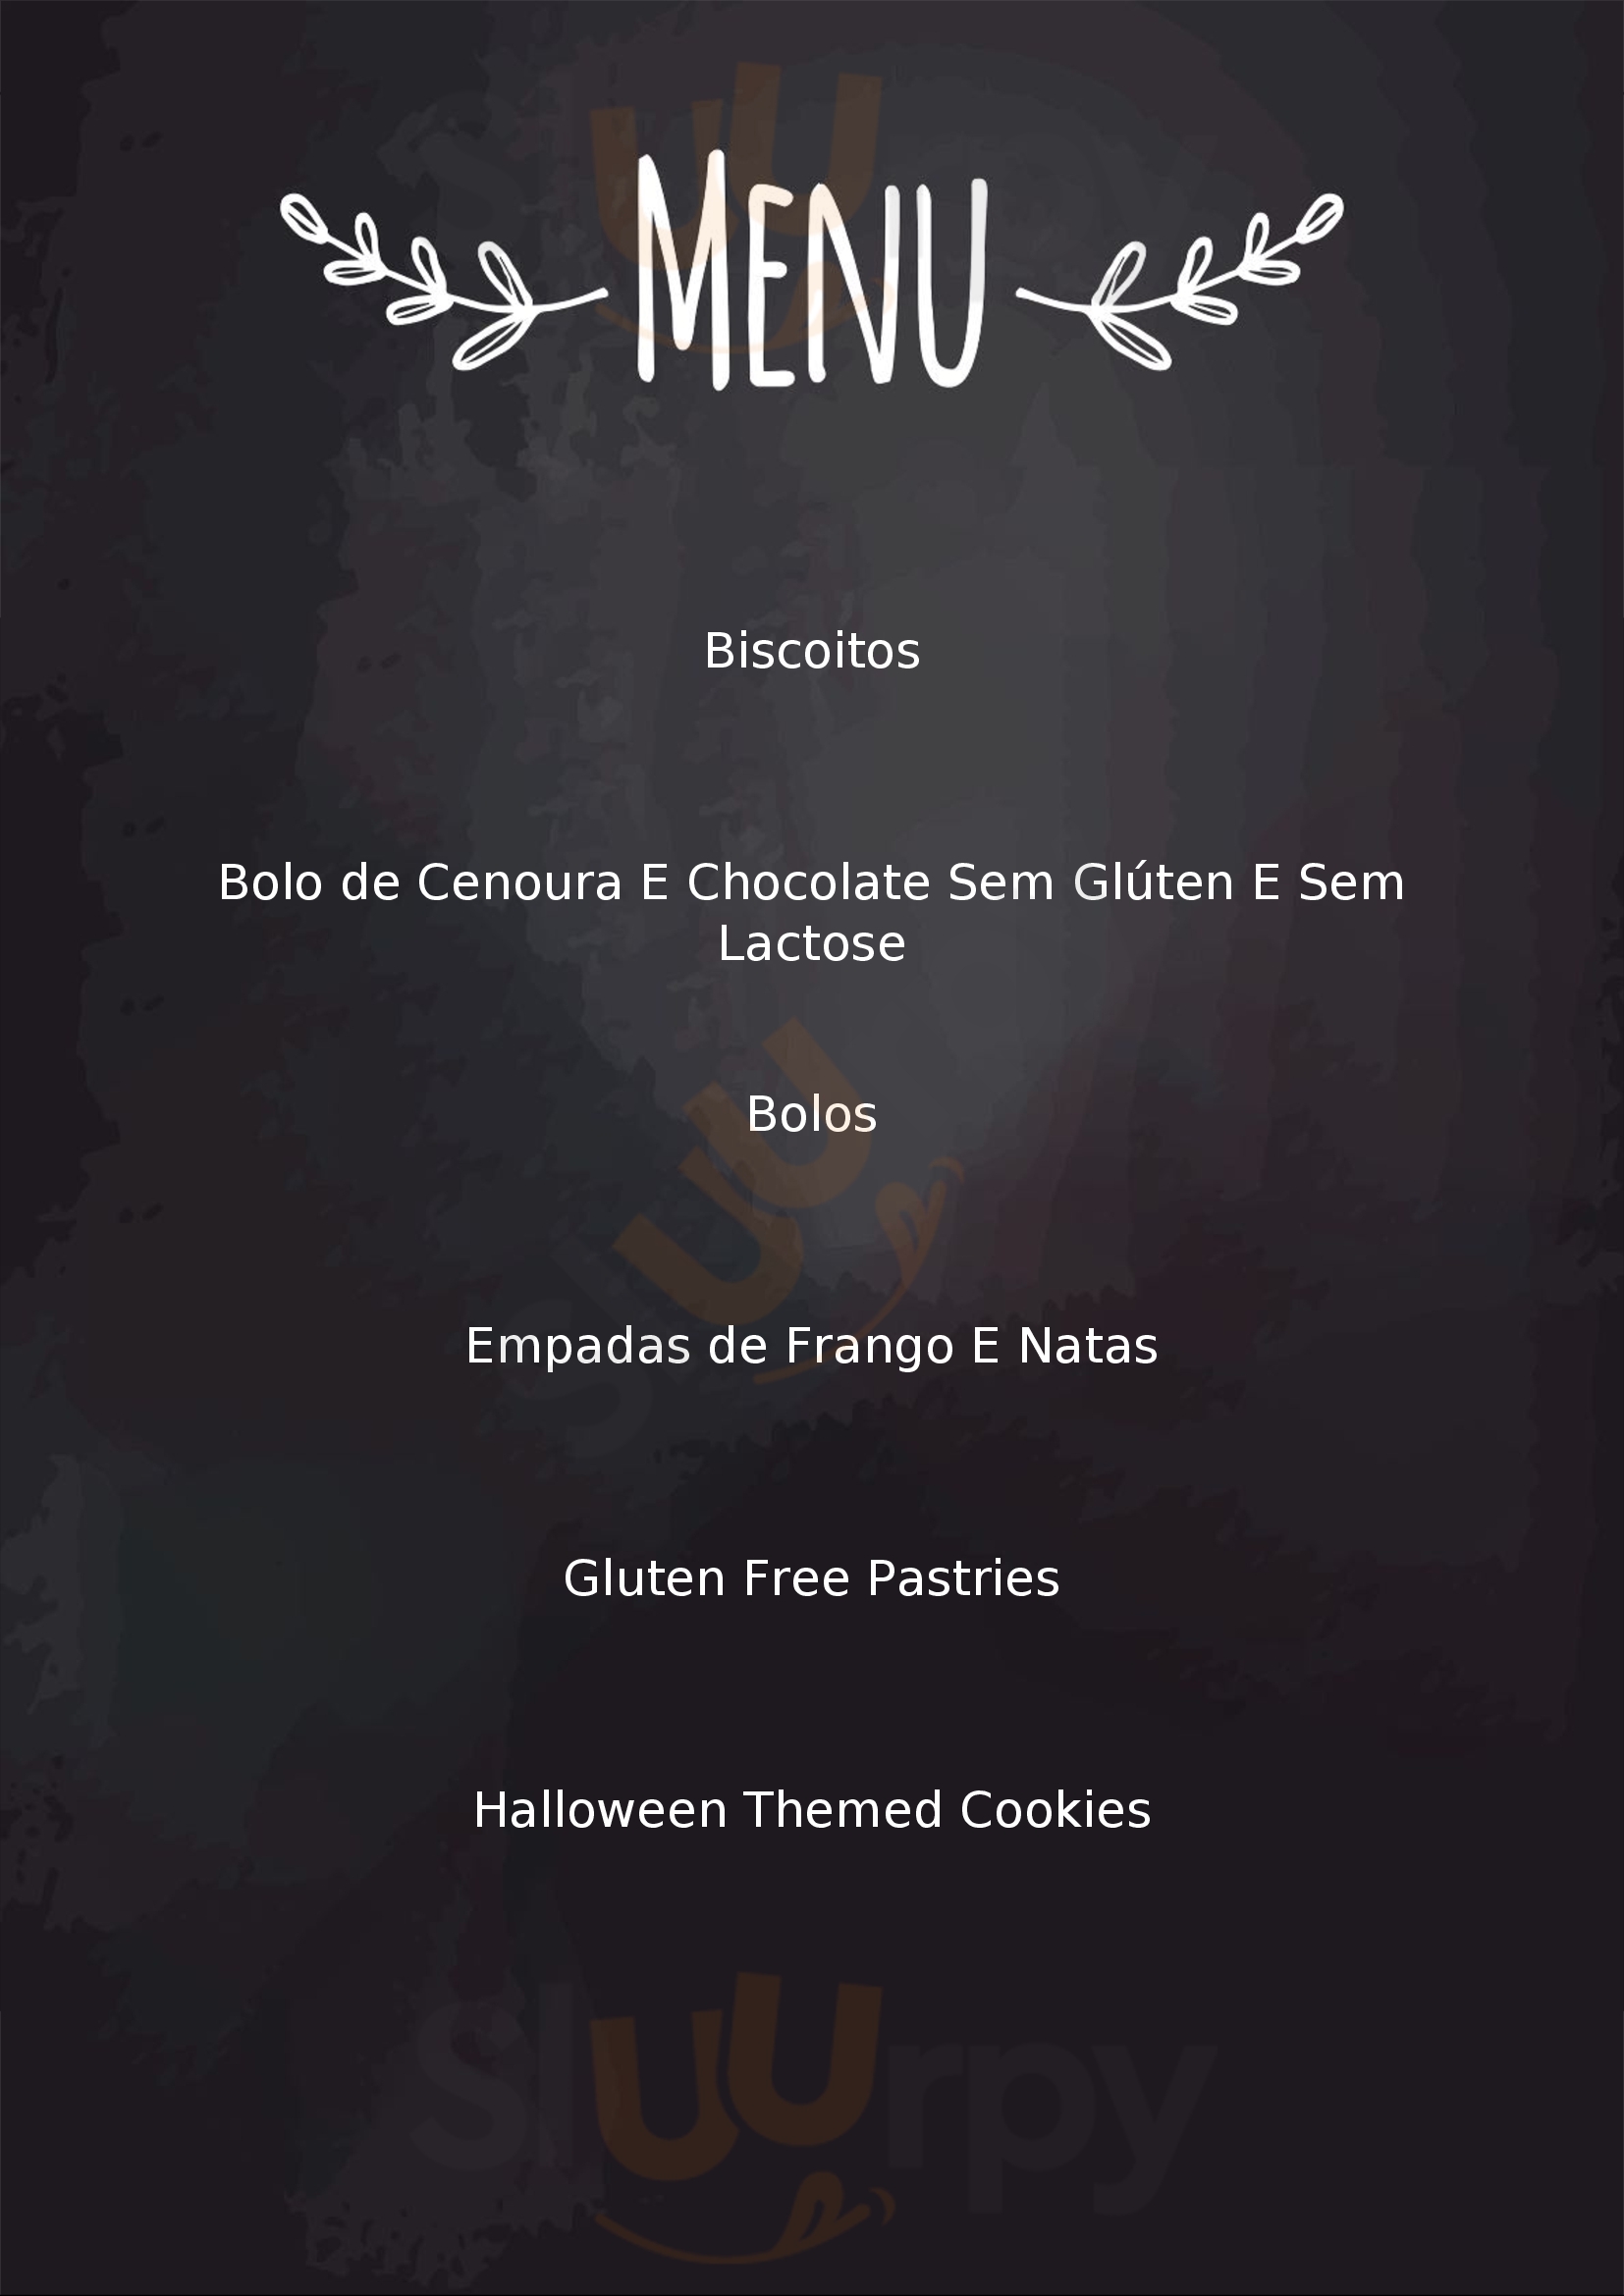 Celícias - Gluten Free Company Vila Nova de Gaia Menu - 1